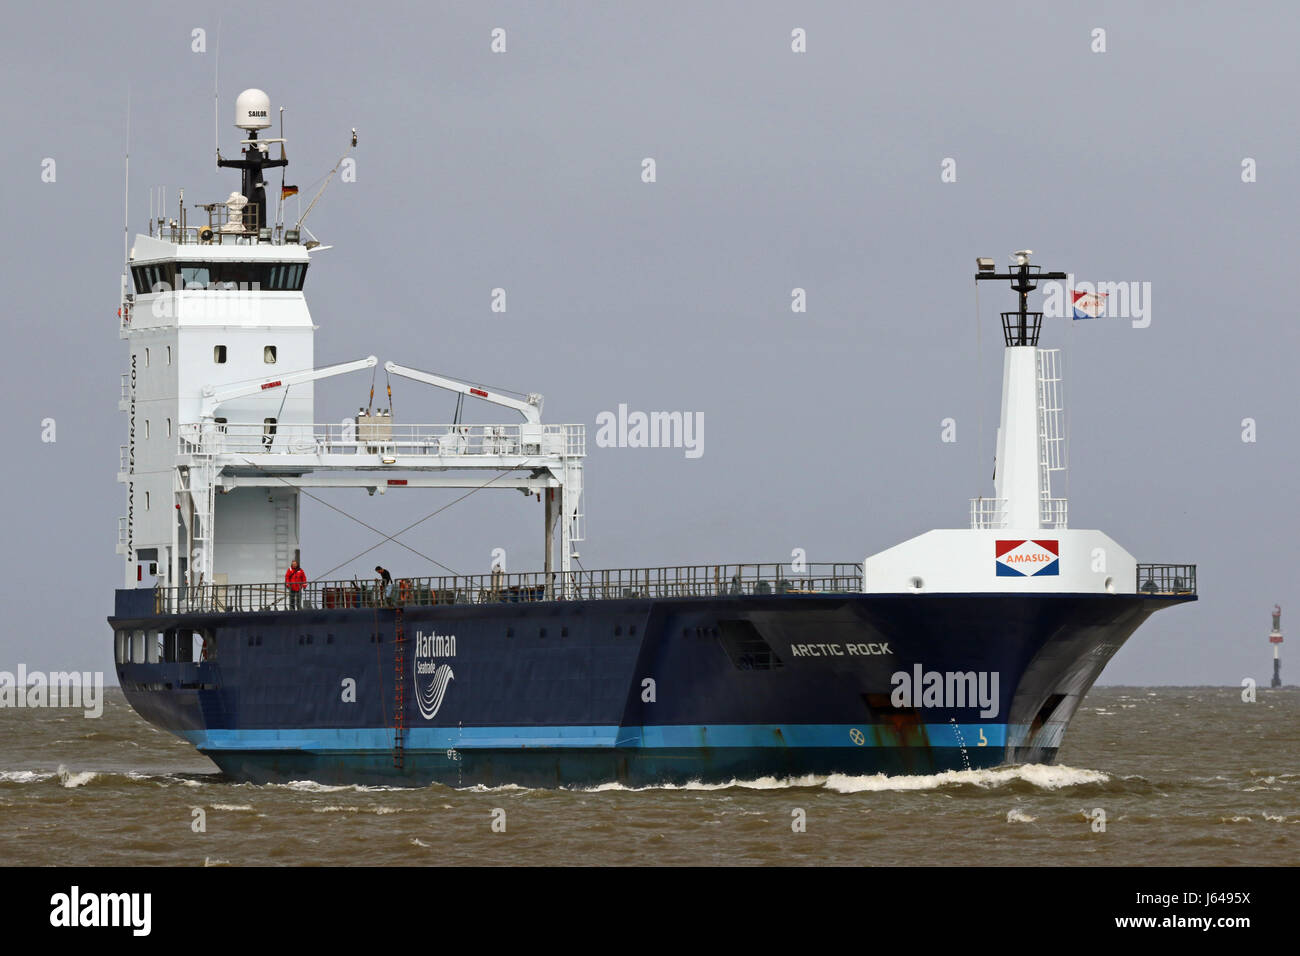 El carguero Arctic Rock pasa por el puerto de Cuxhaven en el Elba. Foto de stock